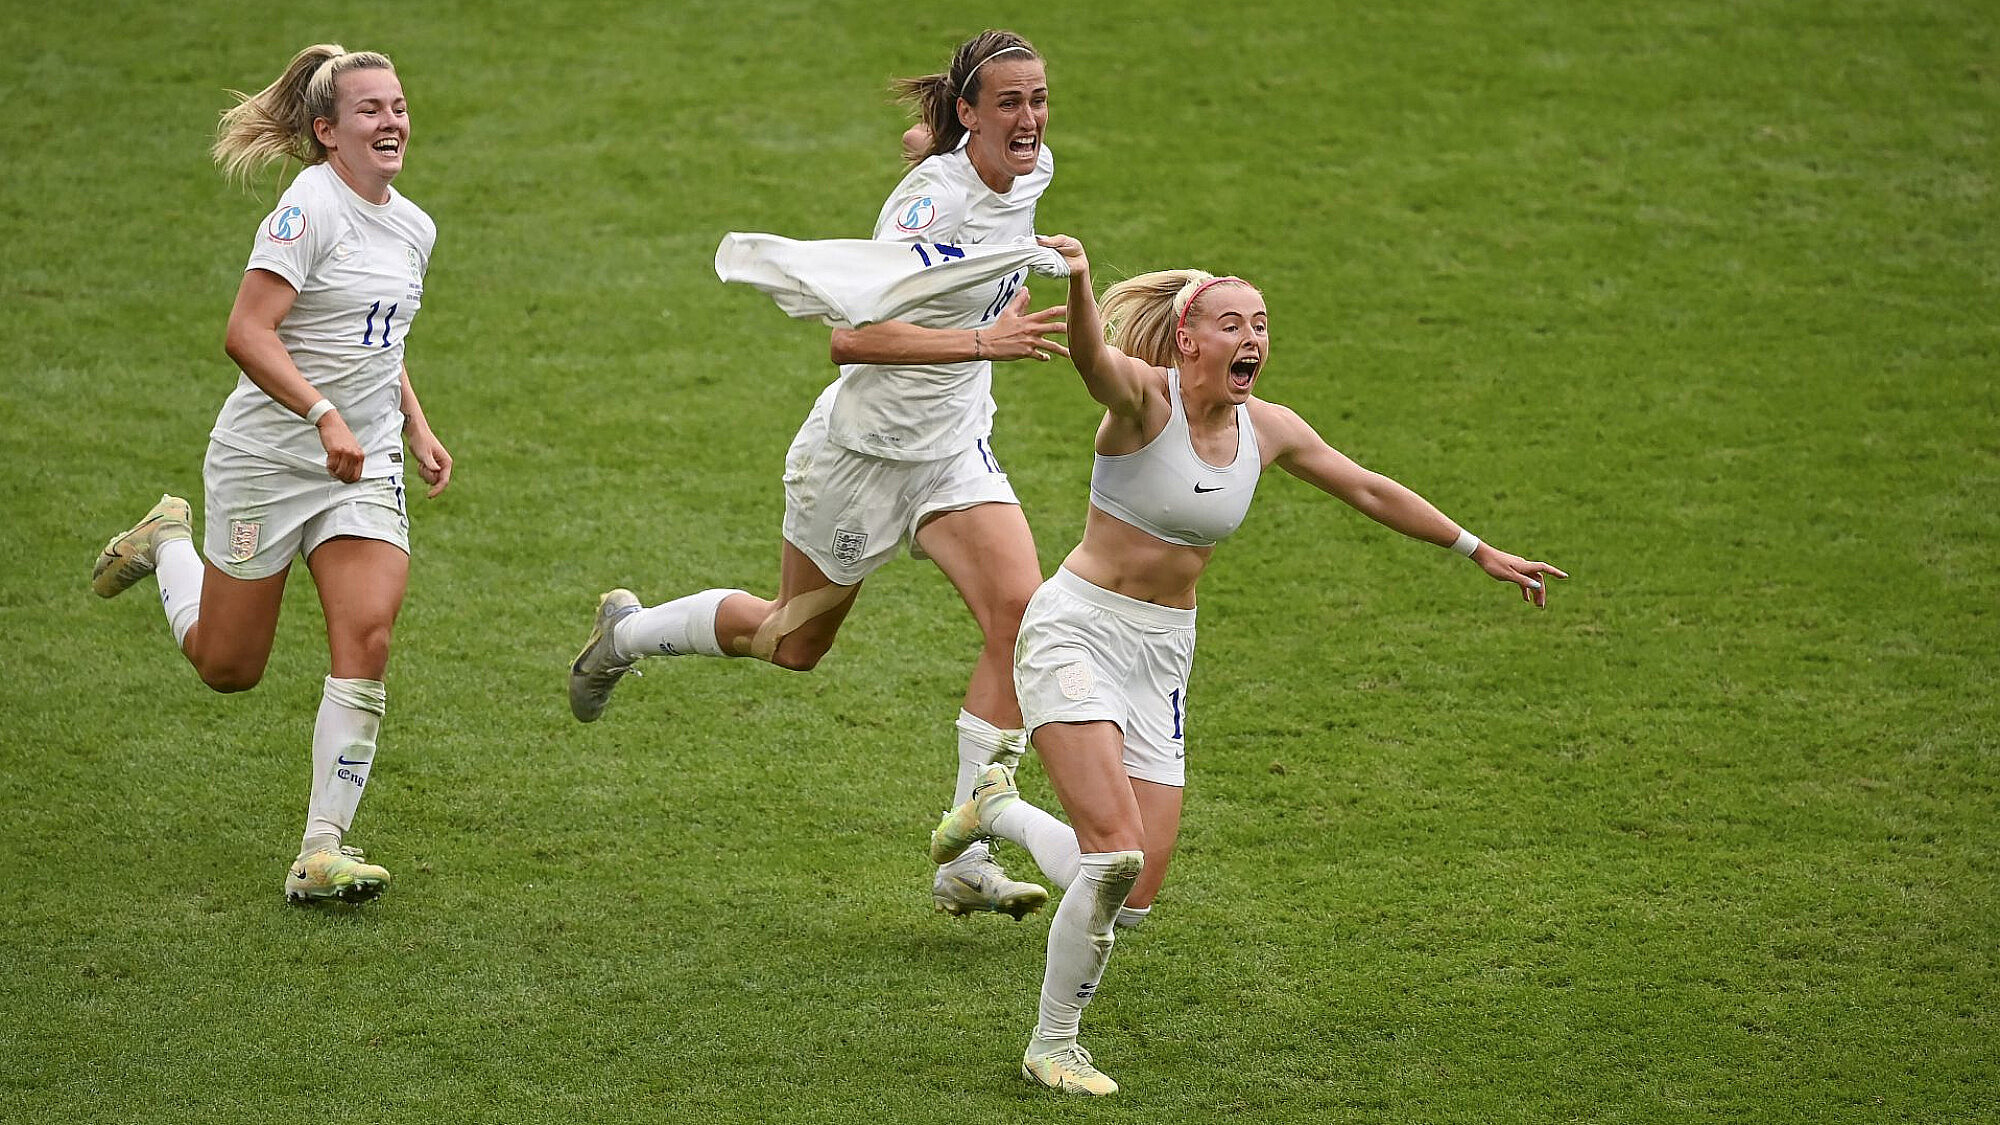 קלואי קלי חוגגת ניצחון עם נבחרת הנשים של אנגליה | צילום: Michael Regan/Getty Images